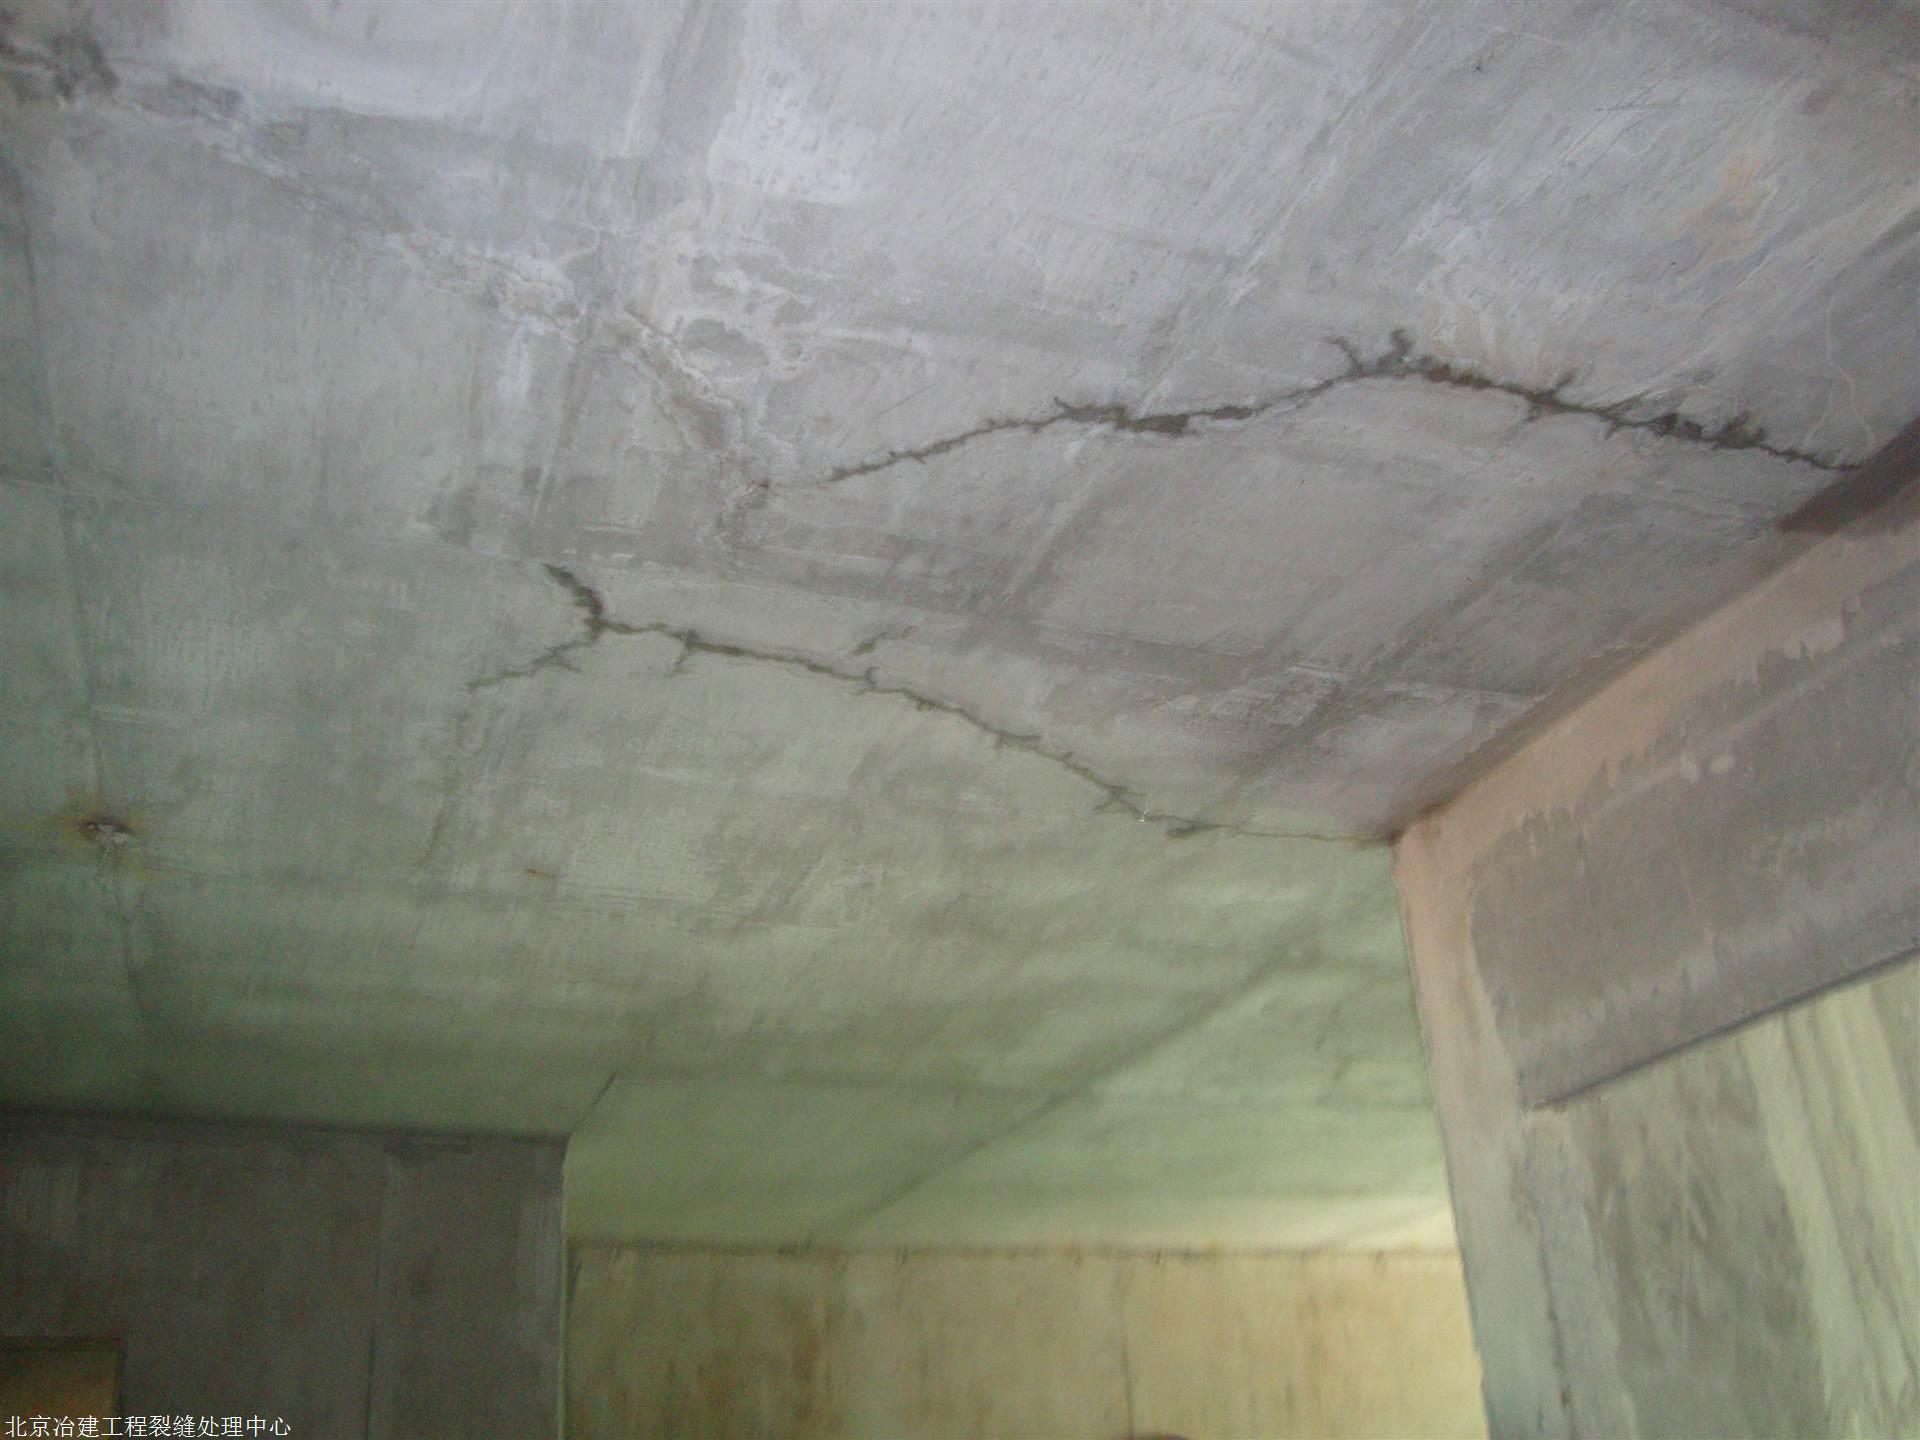 混凝土结构裂缝不要怕，记牢这些裂缝的控制措施 - 建筑界